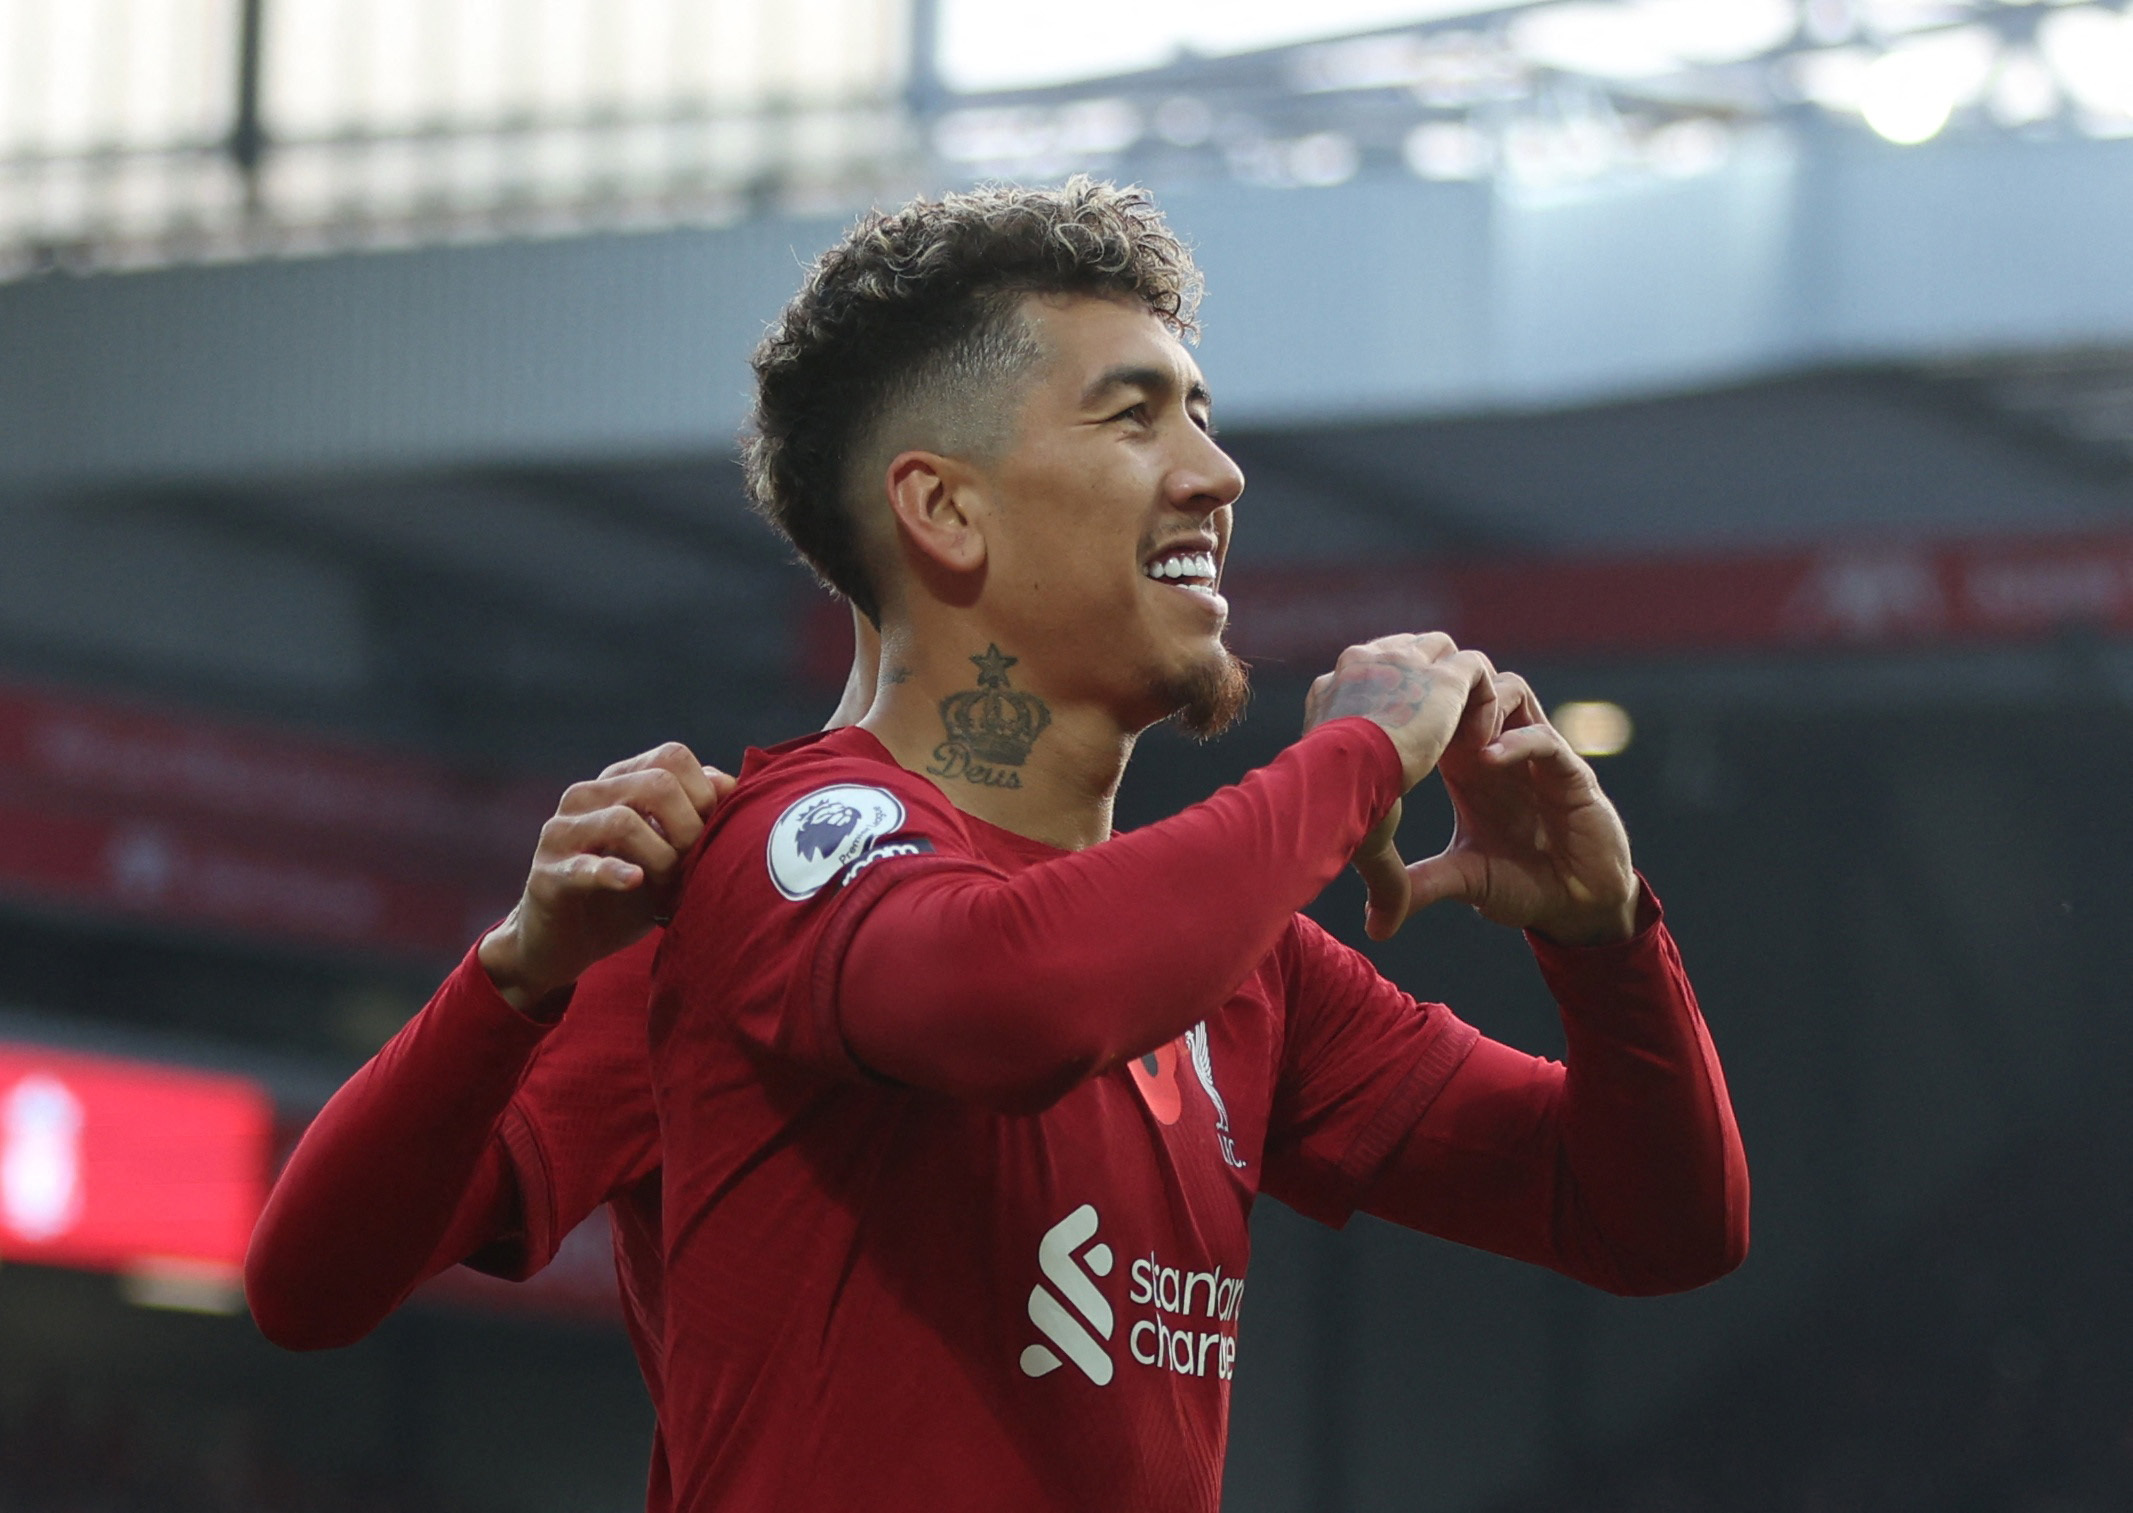 Firmino emigrará del Liverpool en busca de revancha y así poder retornar a su mejor nivel (REUTERS/Russell Cheyne)